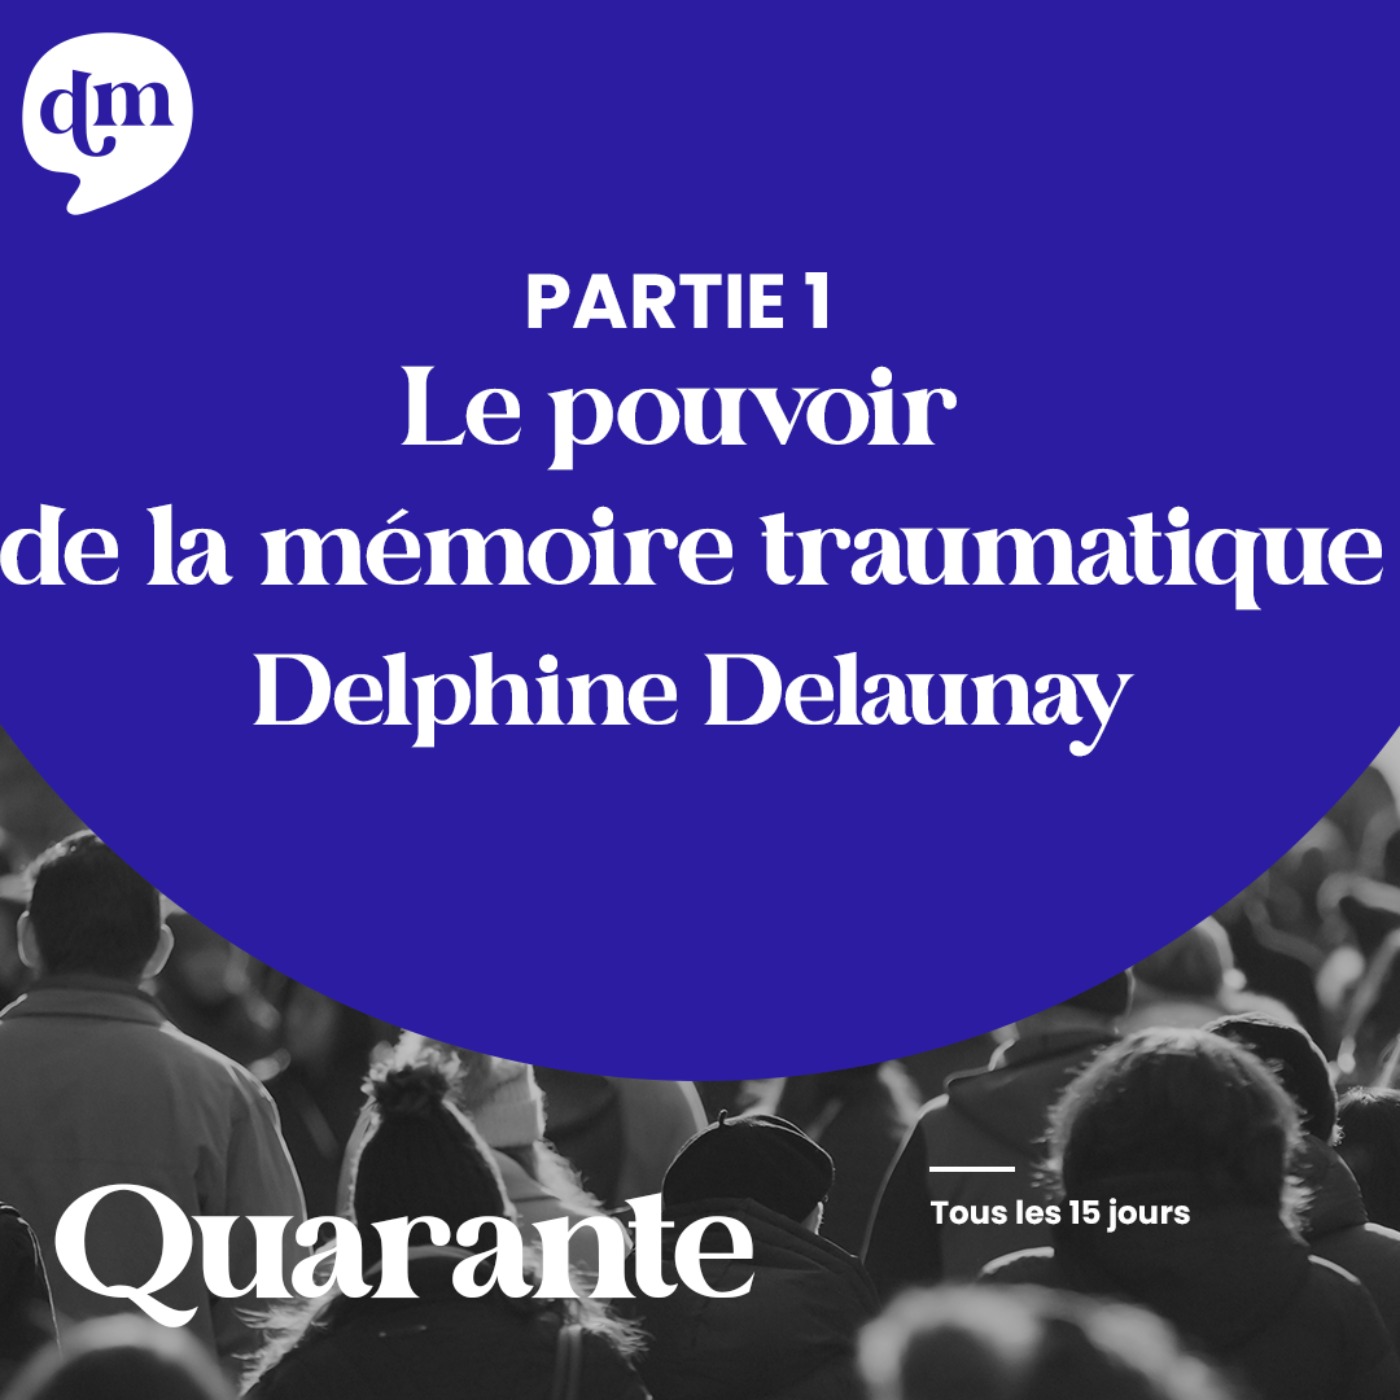 Le pouvoir de la mémoire traumatique - Delphine Delaunay - 1ère partie